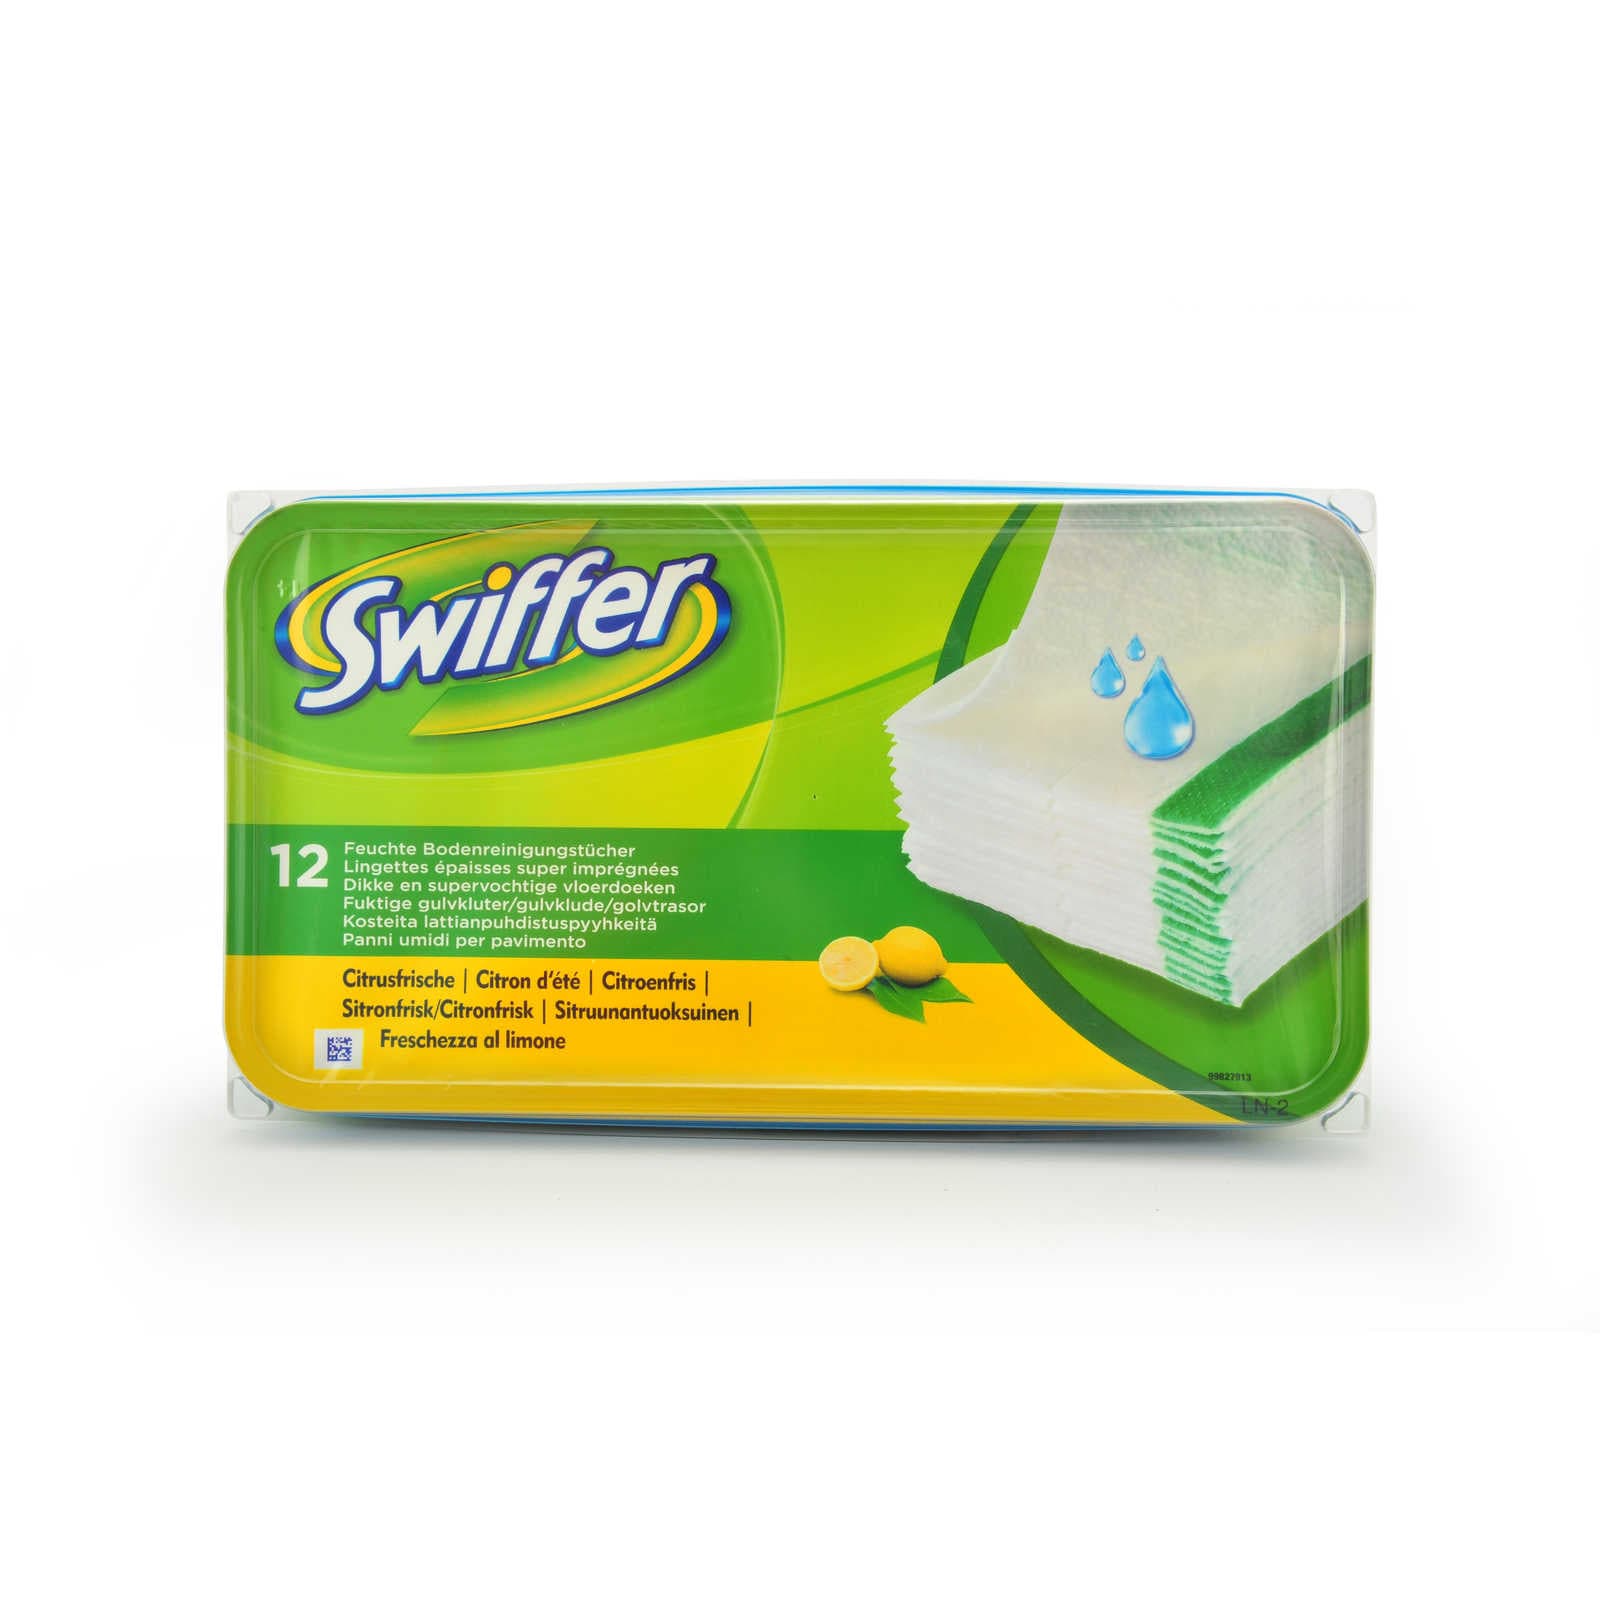 Lingettes swiffer wet - Swiffer